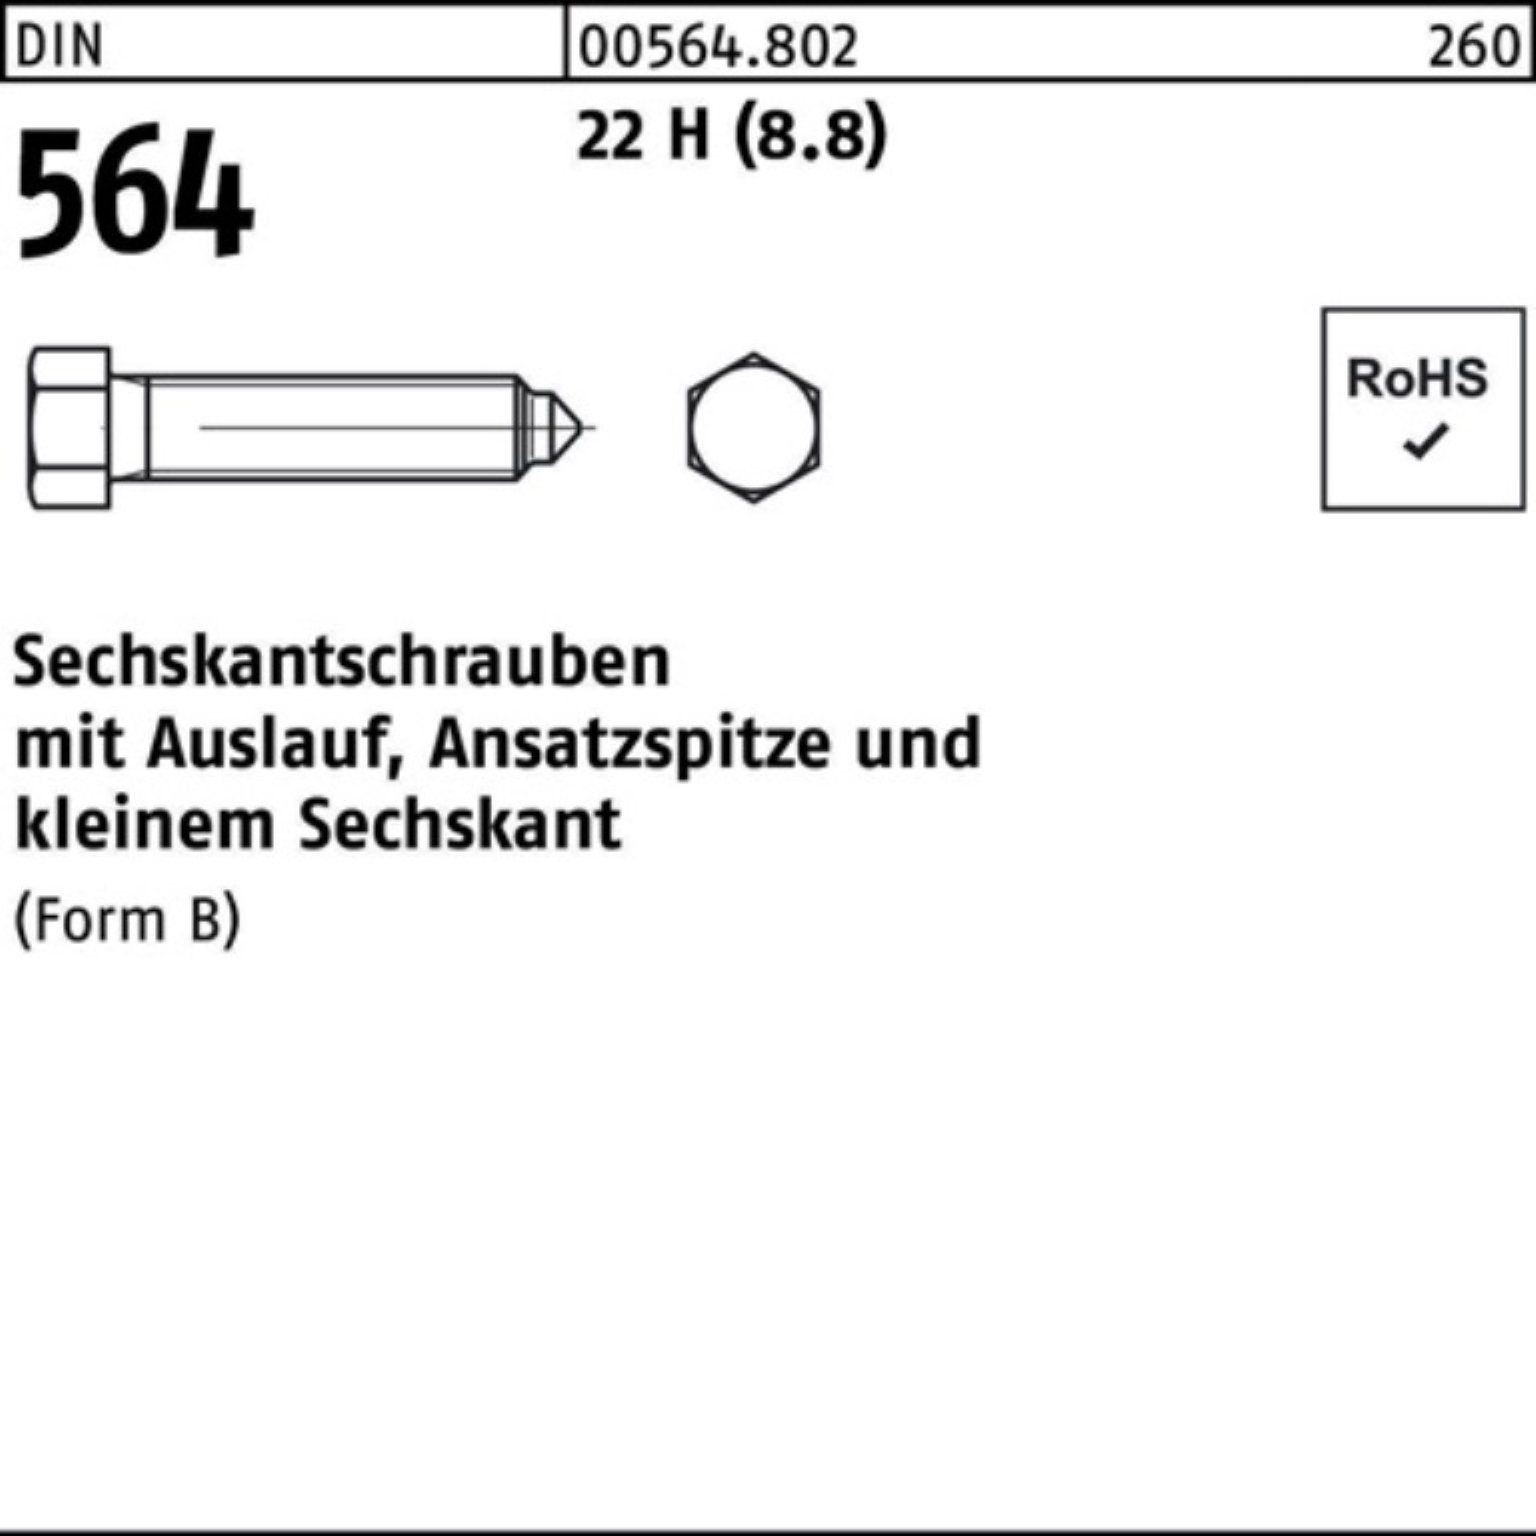 Reyher Sechskantschraube 100er Pack Sechskantschraube DIN 564 Ansatzspitze/Auslauf BM 10x 20 22